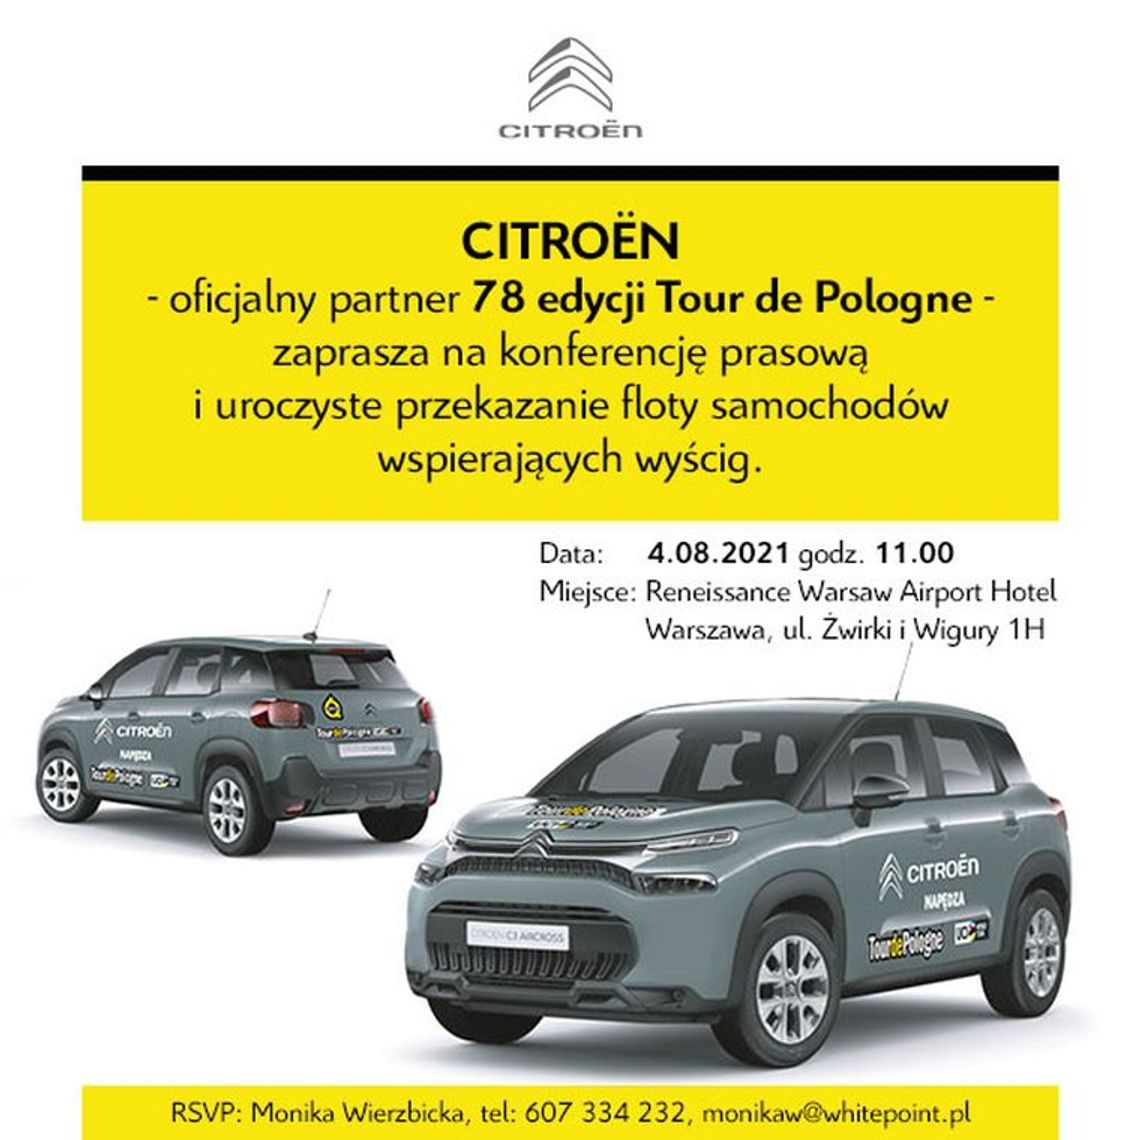 Przekazanie floty samochodów marki Citroen